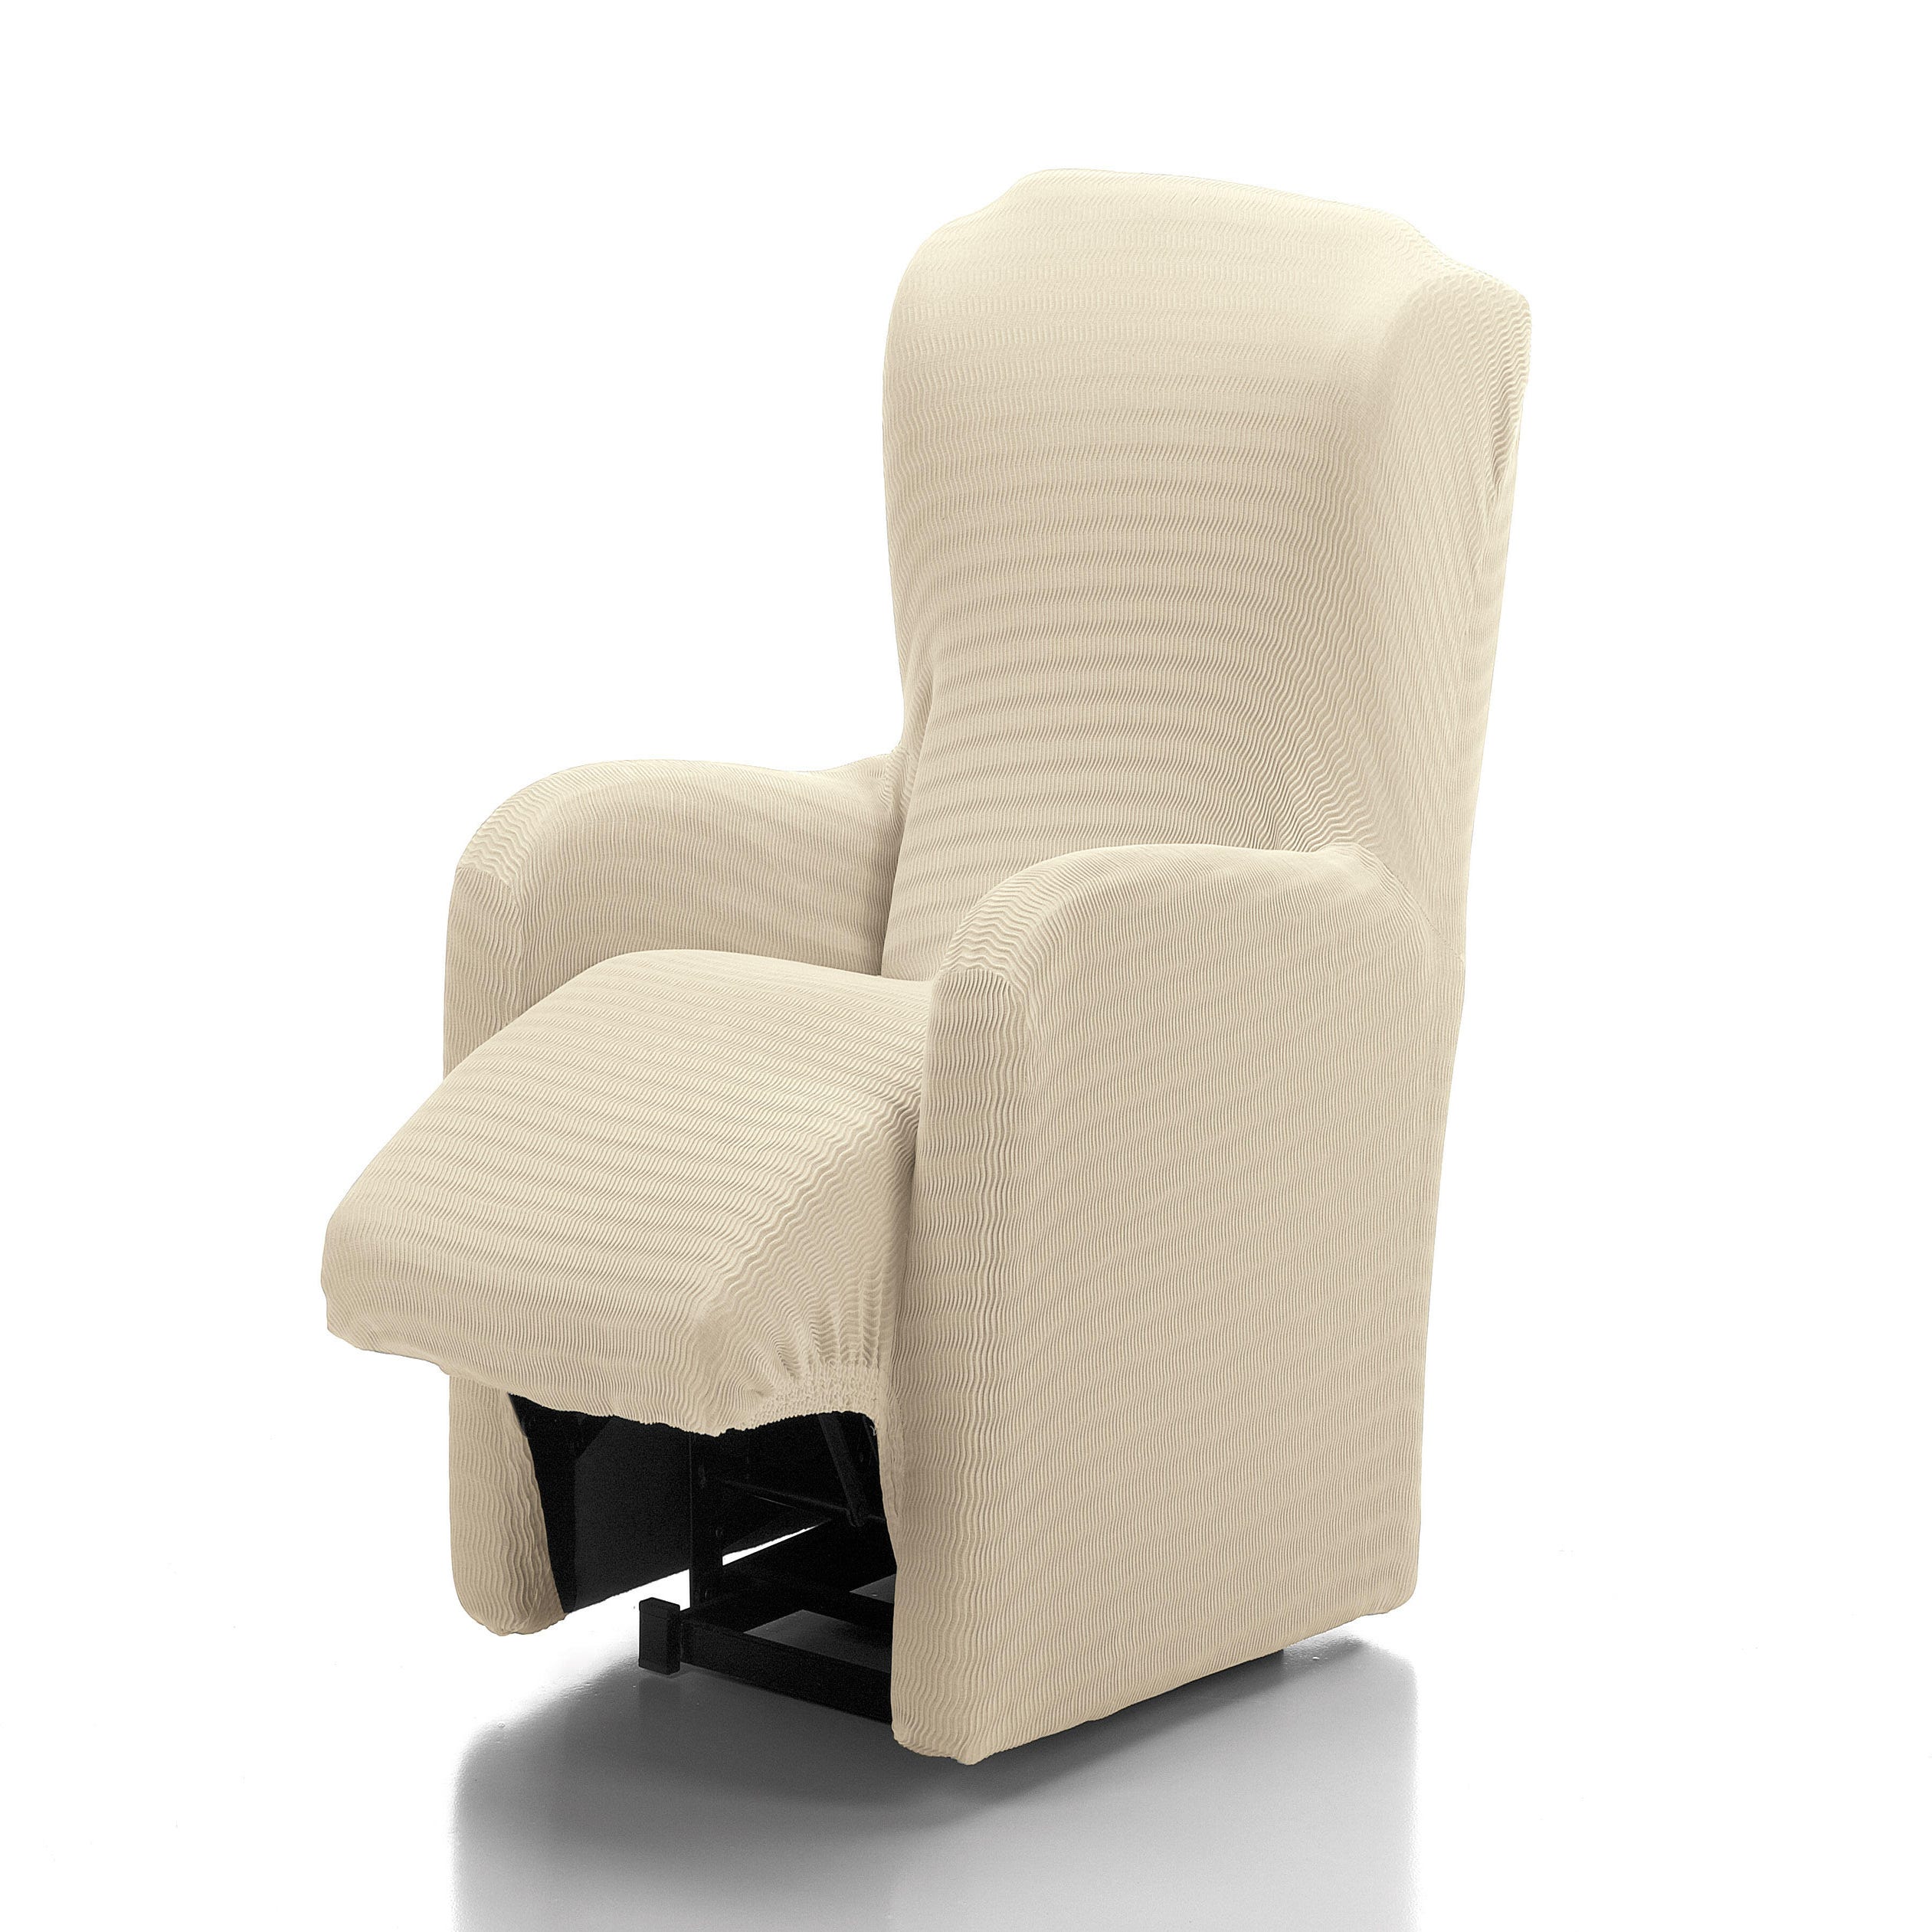 Funda elástica para sillón relax Tenerife con pie por separado o unido